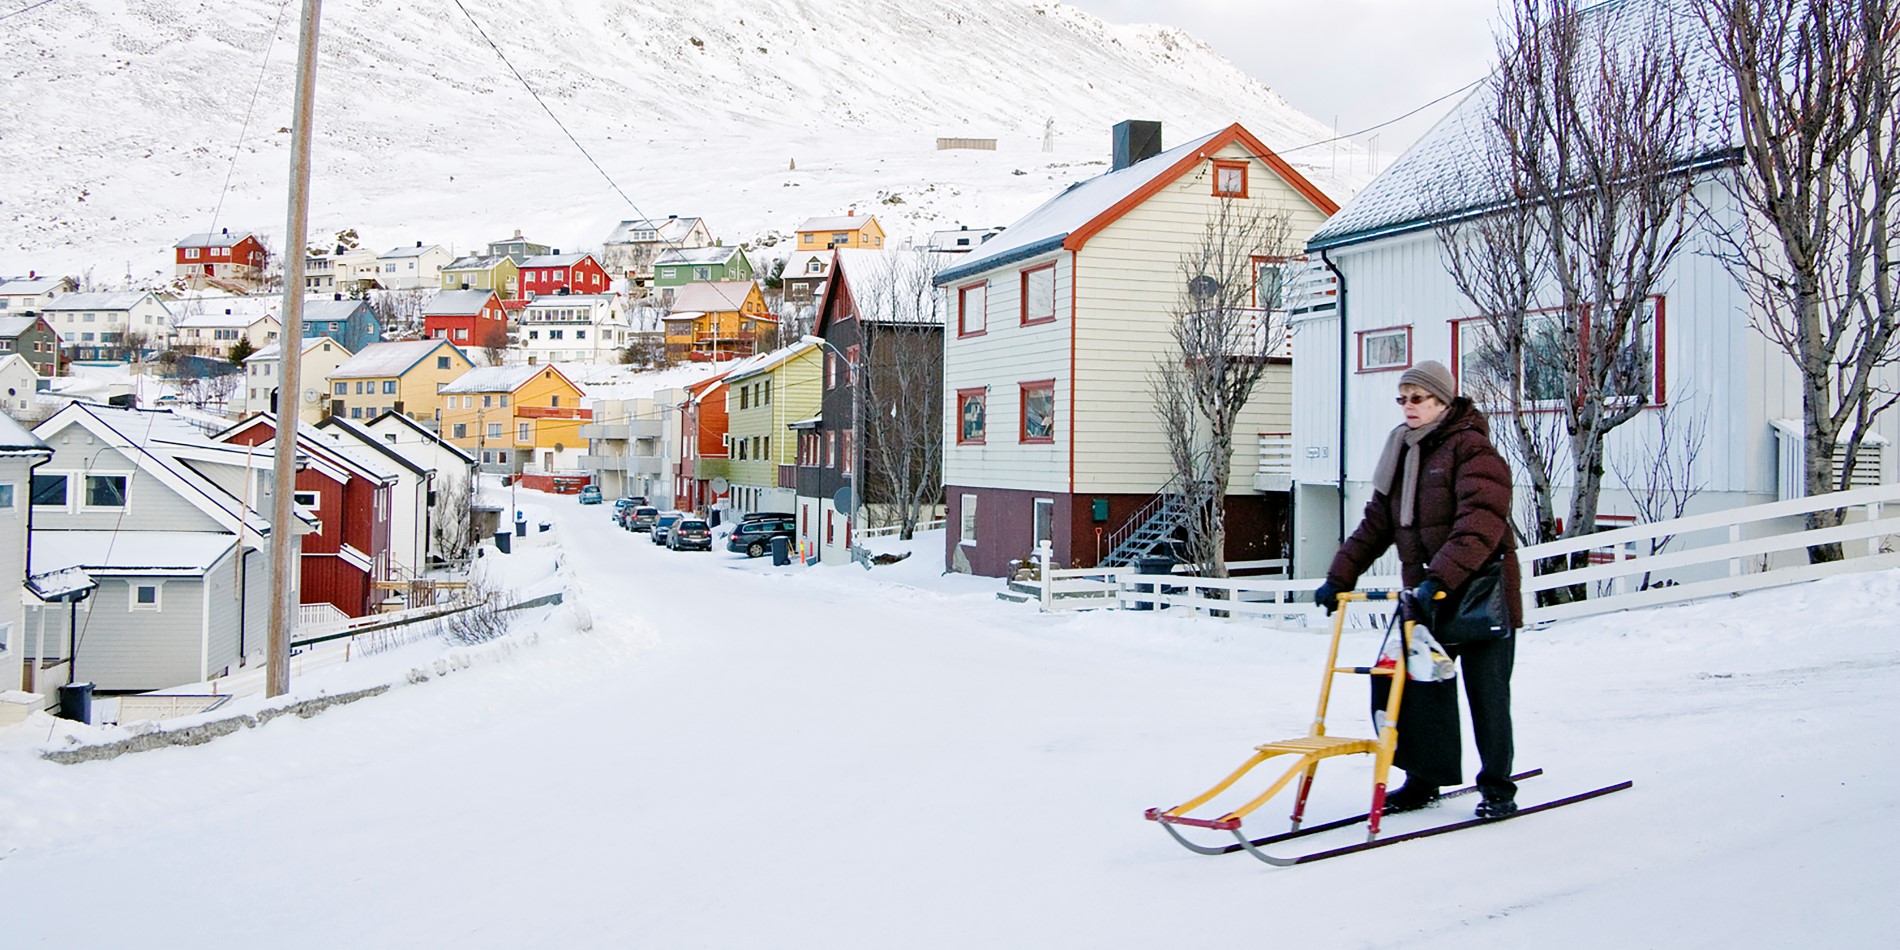 Foto einer älteren Frau auf einer verschneiten Straße. Im Hintergrund sieht man schöne, bunt gestrichene kleine Holzhäuser.